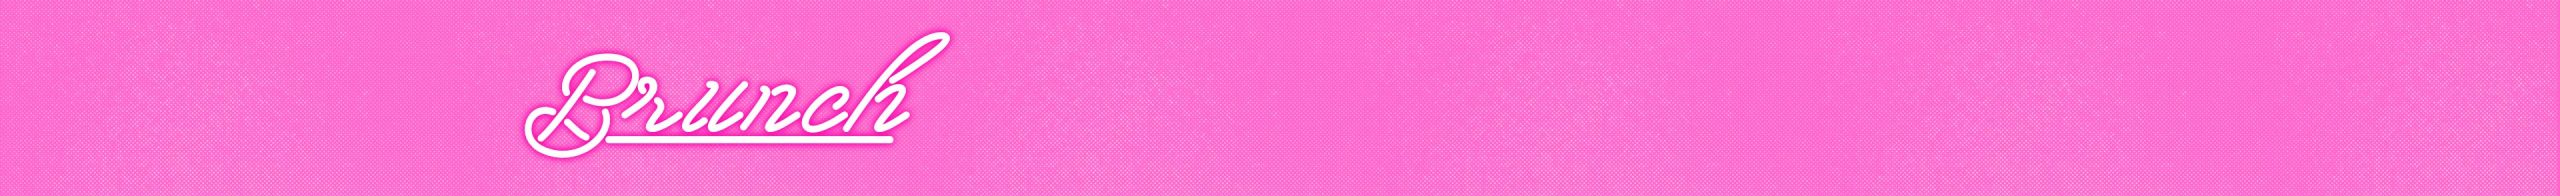 Brunch Title on Pink Background